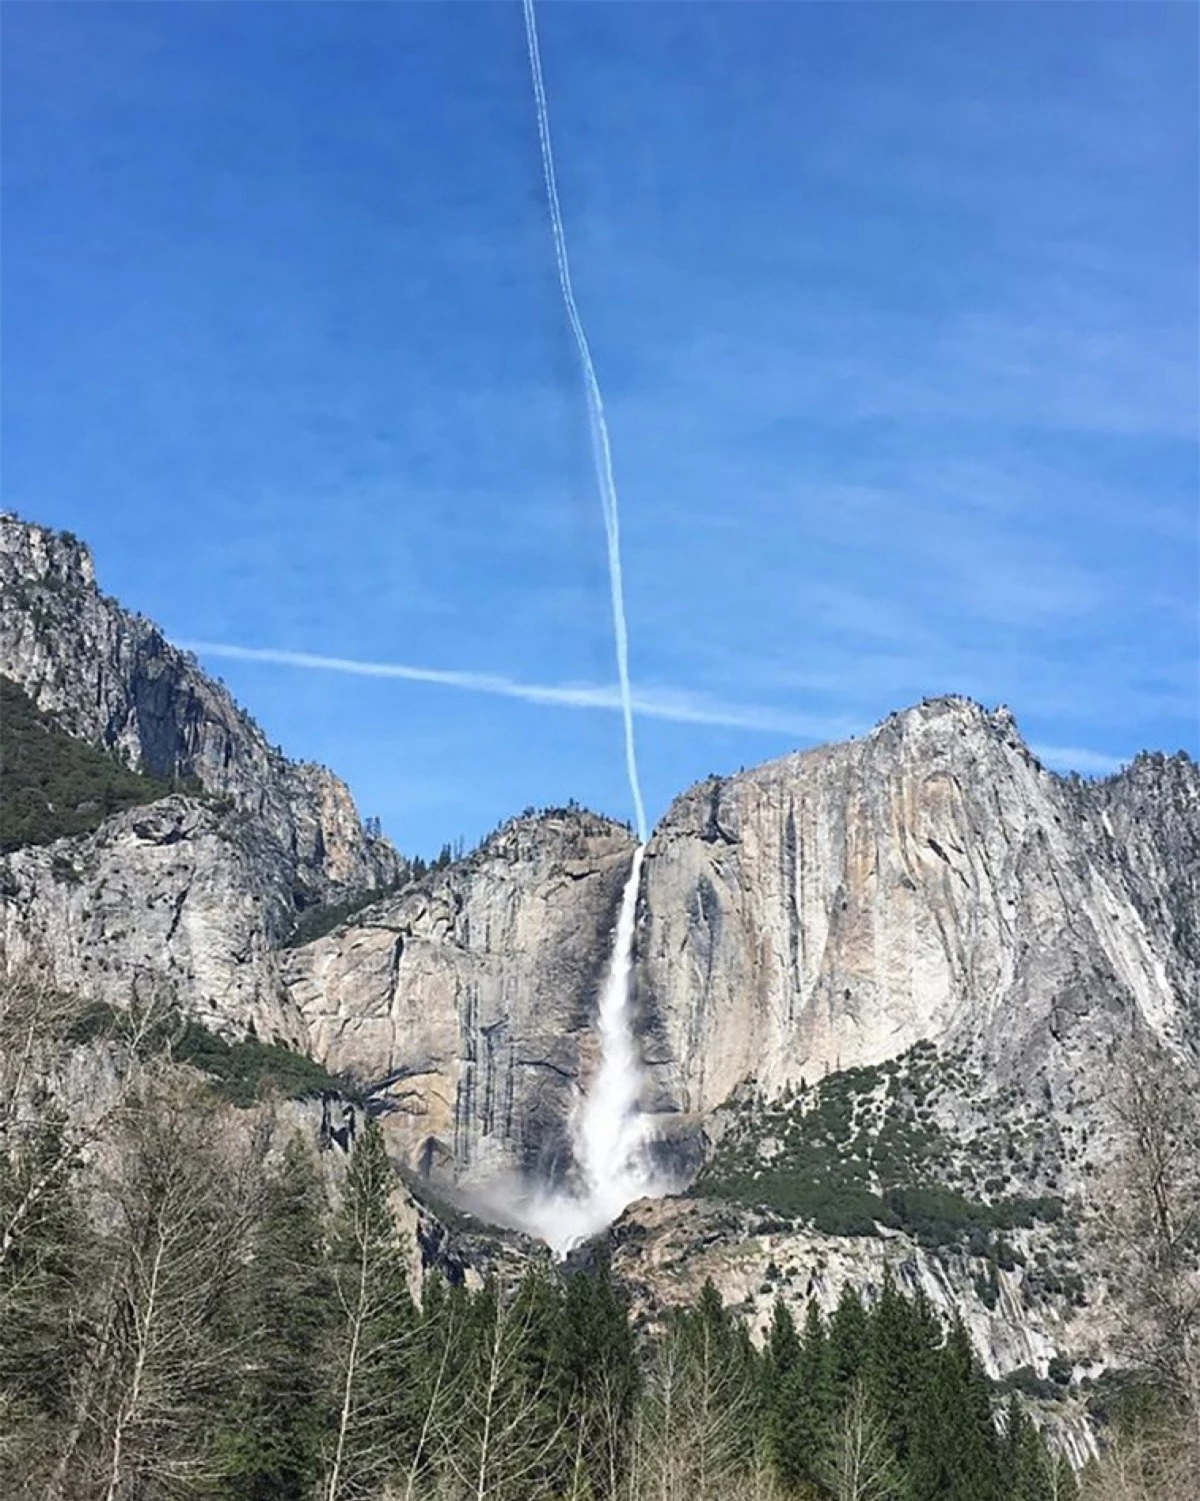 Vệt mây trên bầu trời tình cờ nối liền với thác nước Yosemite khiến nó trông như thể một dòng thác chảy xuống từ trời cao.